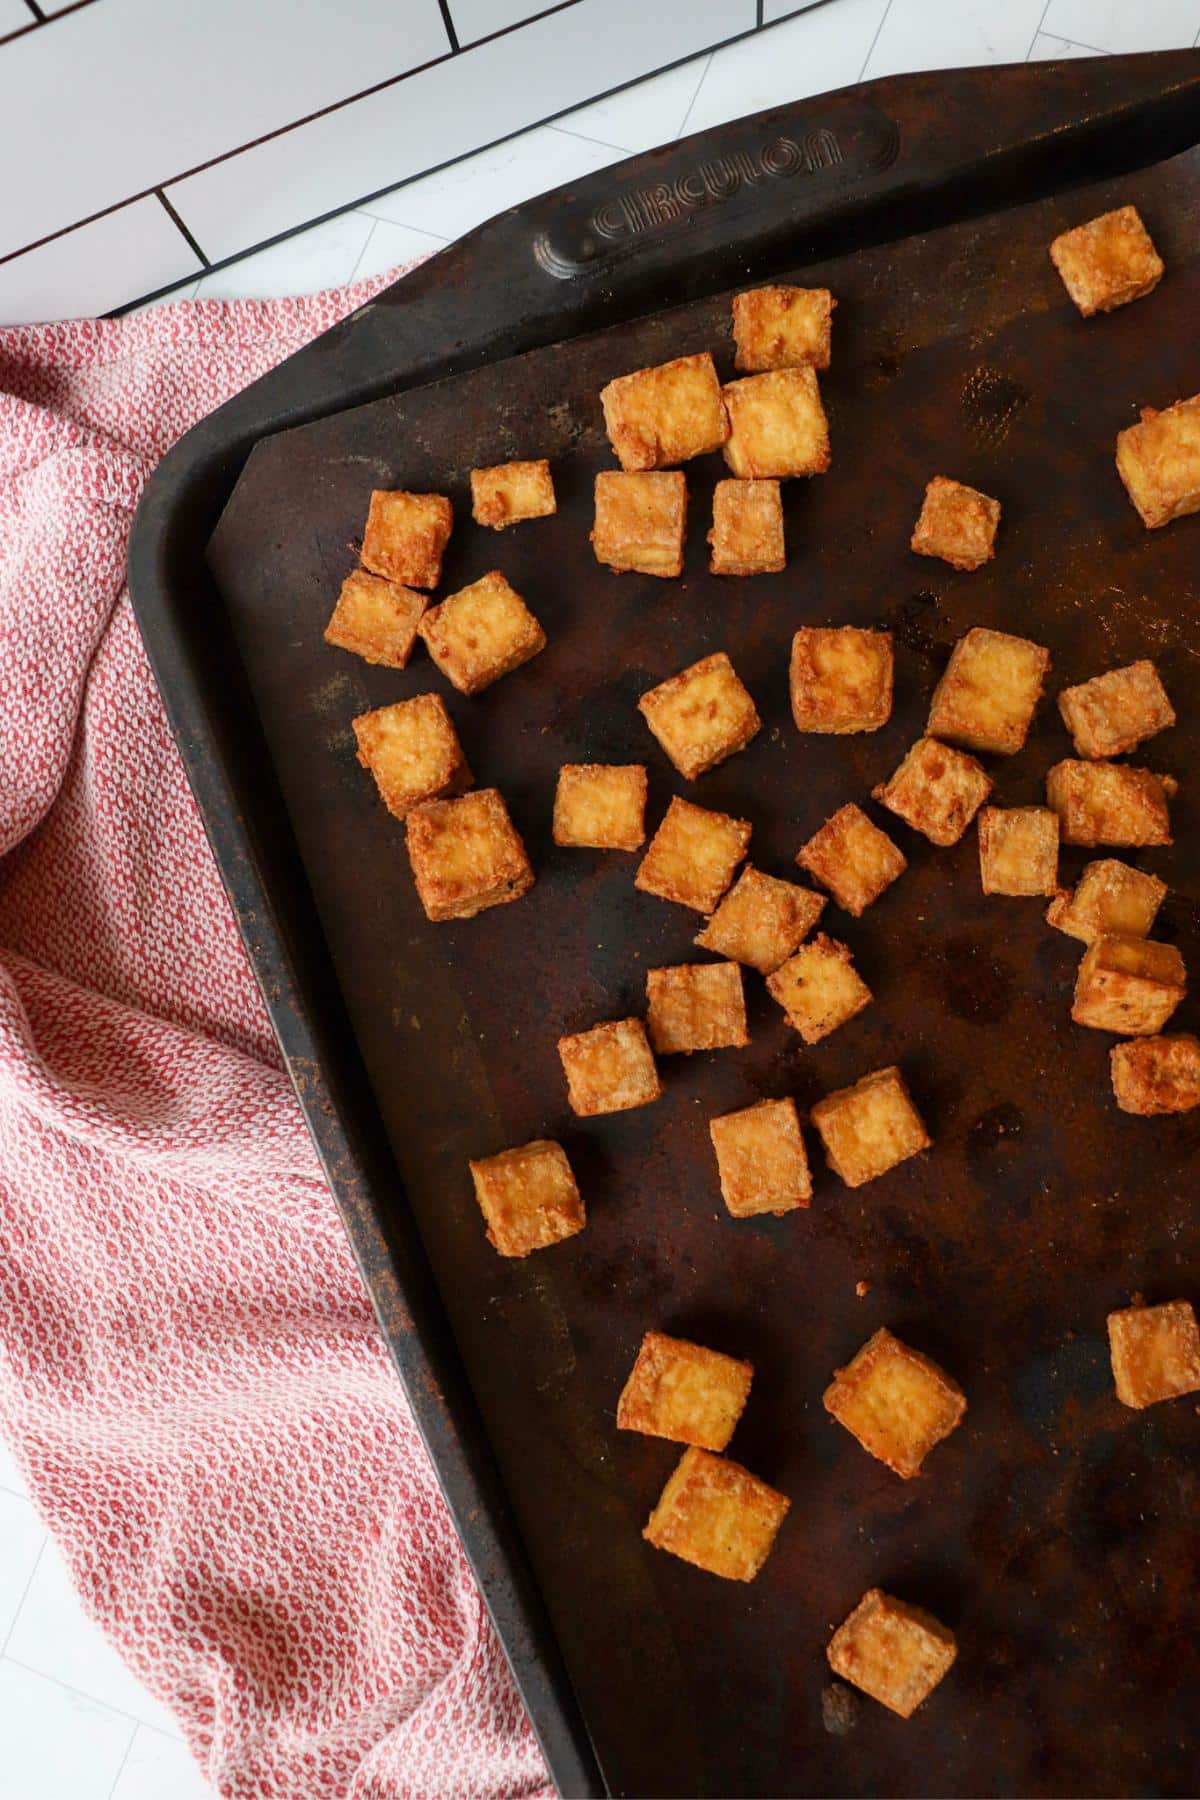 Baking sheet with crispy baked tofu cubes on it.